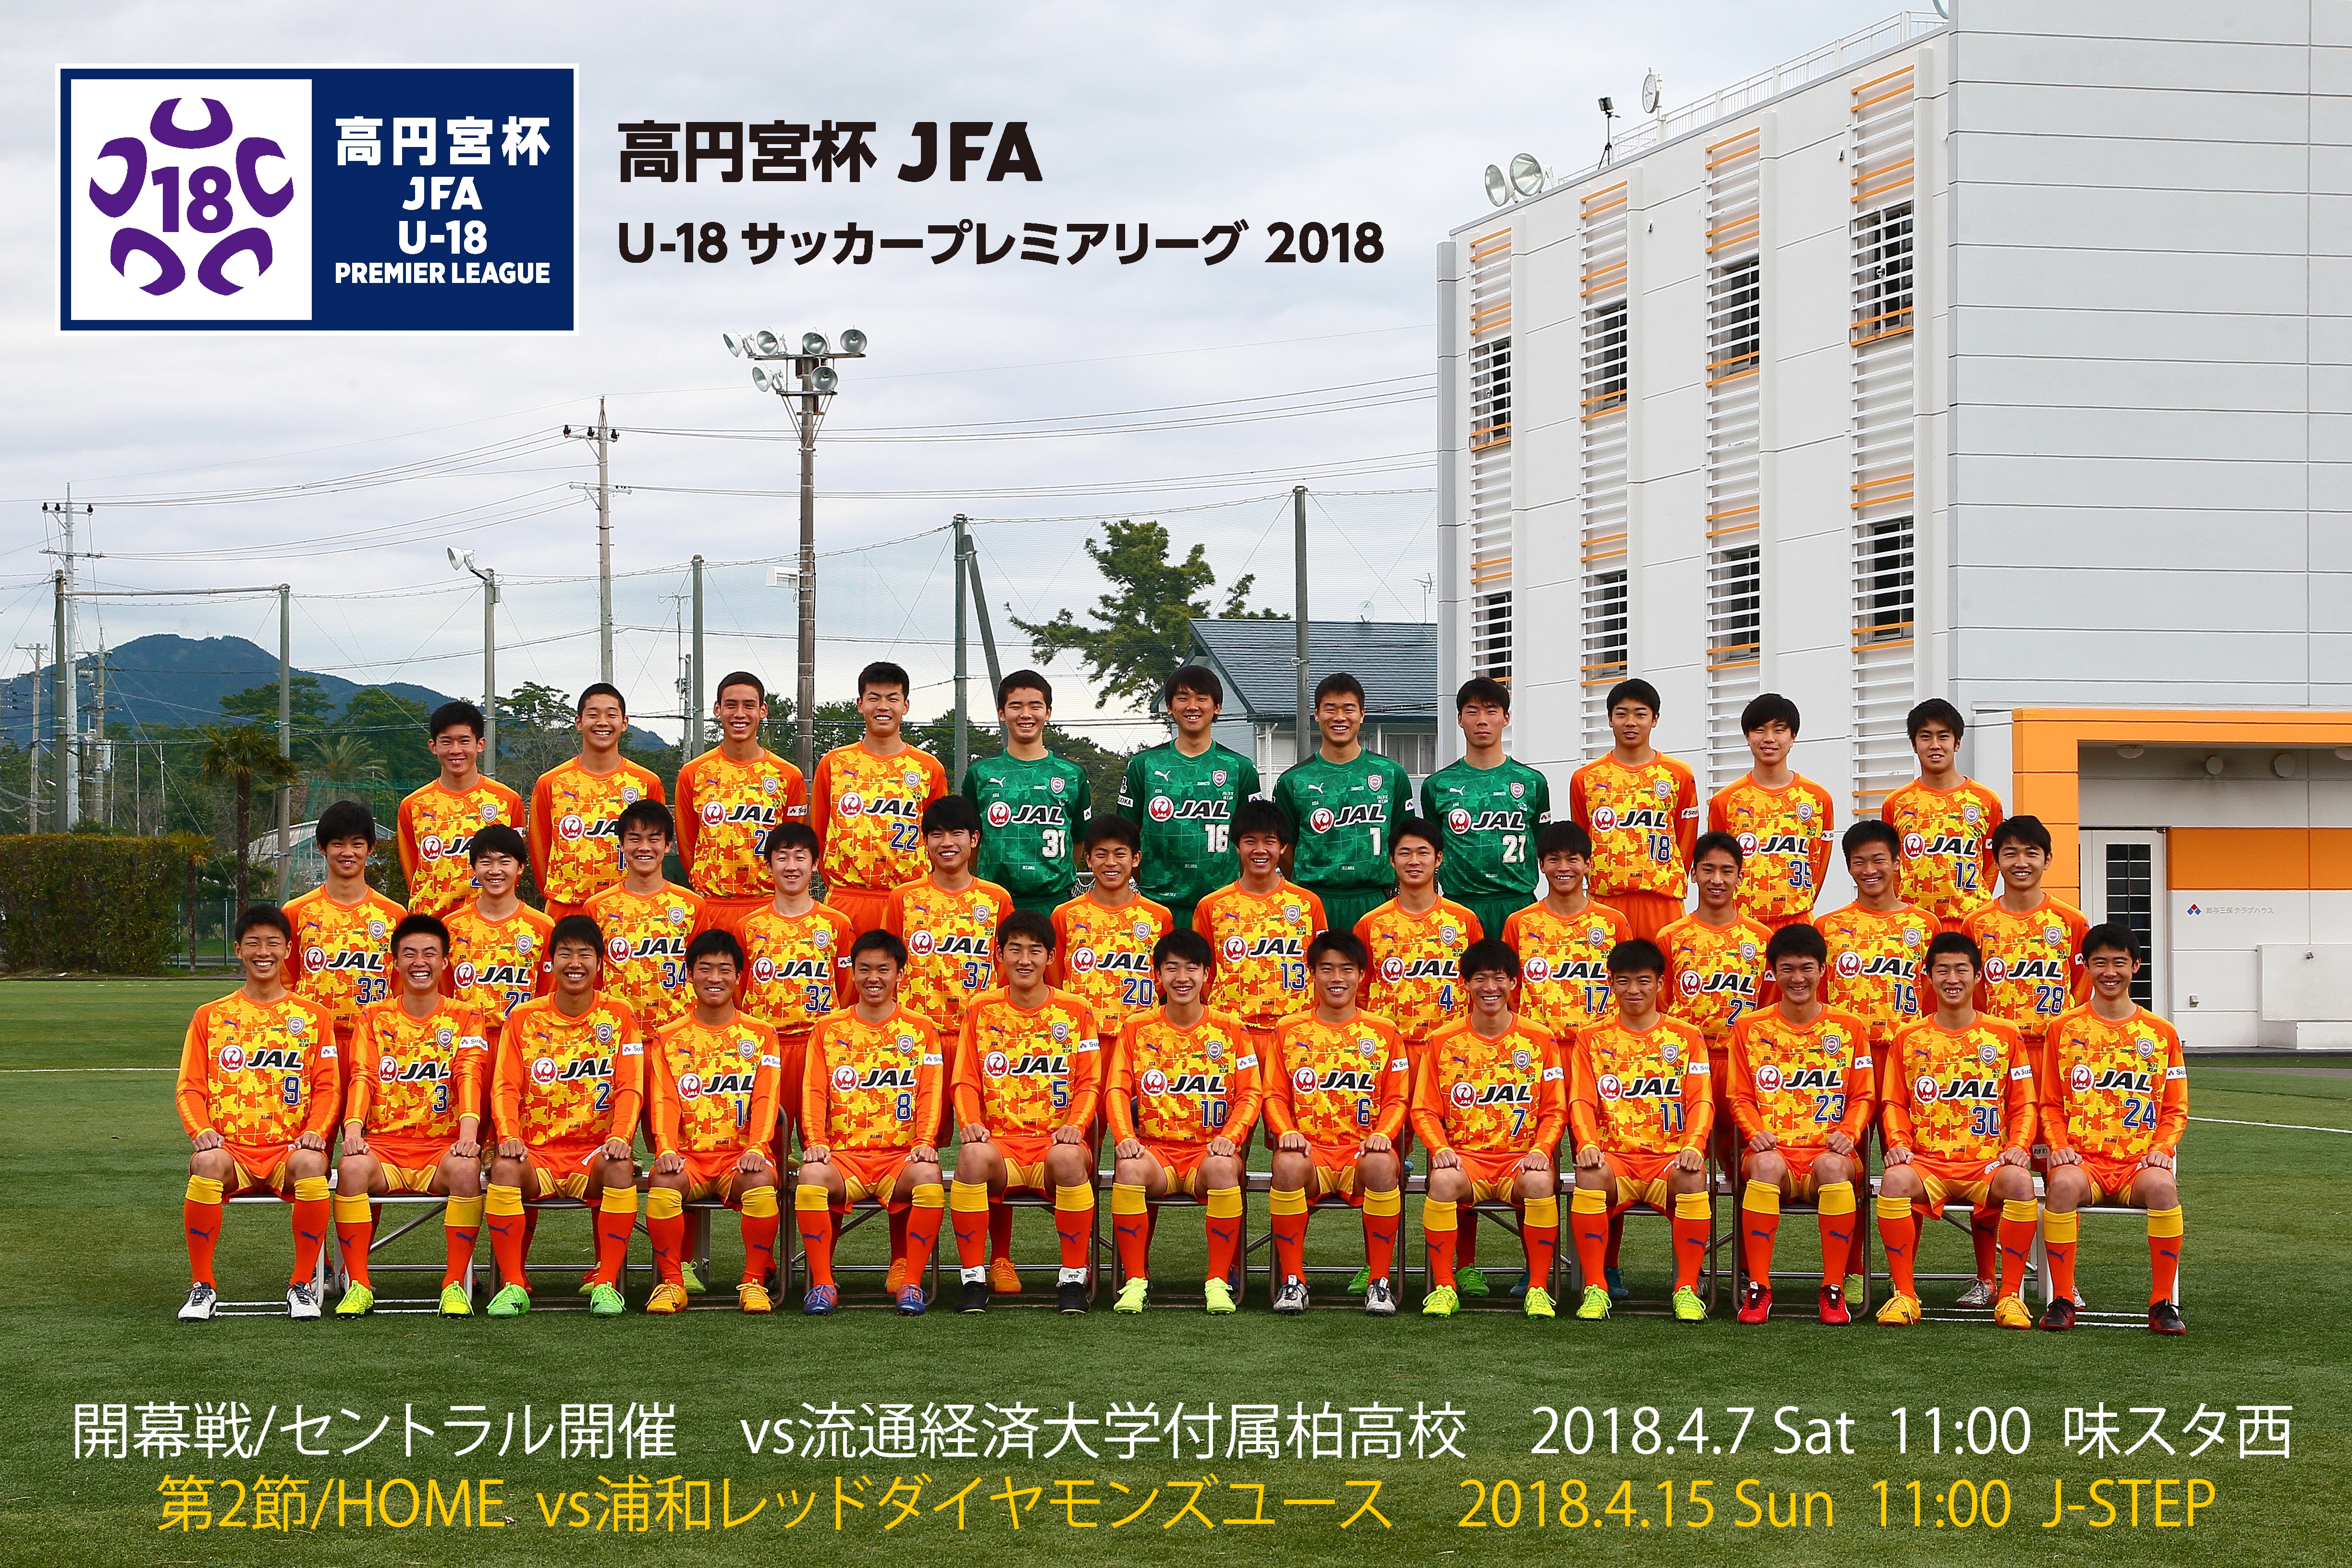 エスパルスユース 高円宮杯 Jfa U 18 サッカープレミアリーグ 18 明日開幕 清水エスパルス公式webサイト